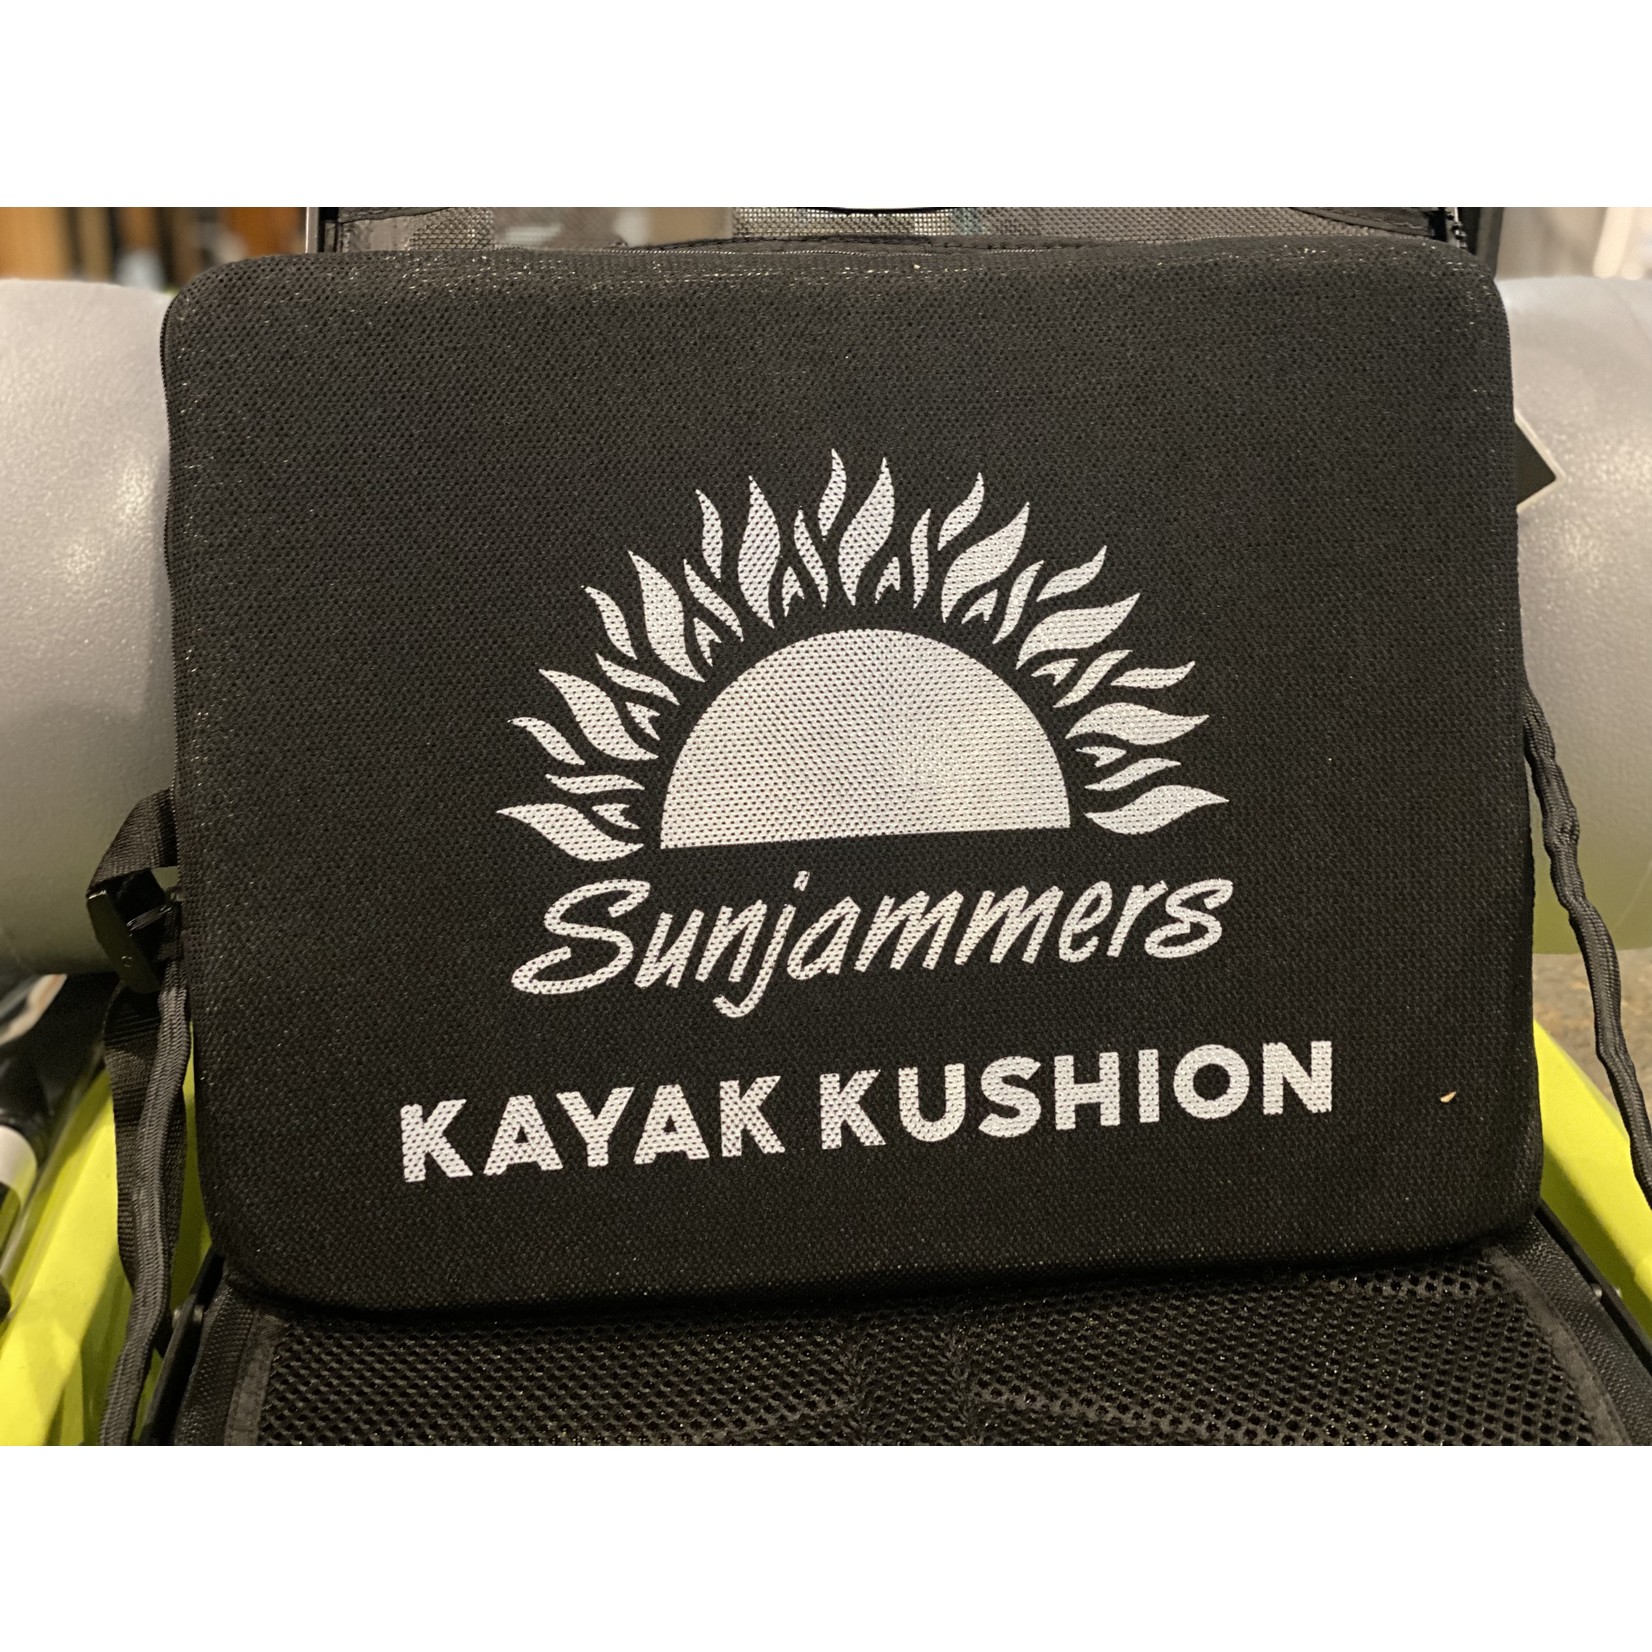 Hobie Kayak Kushion Firm - Black